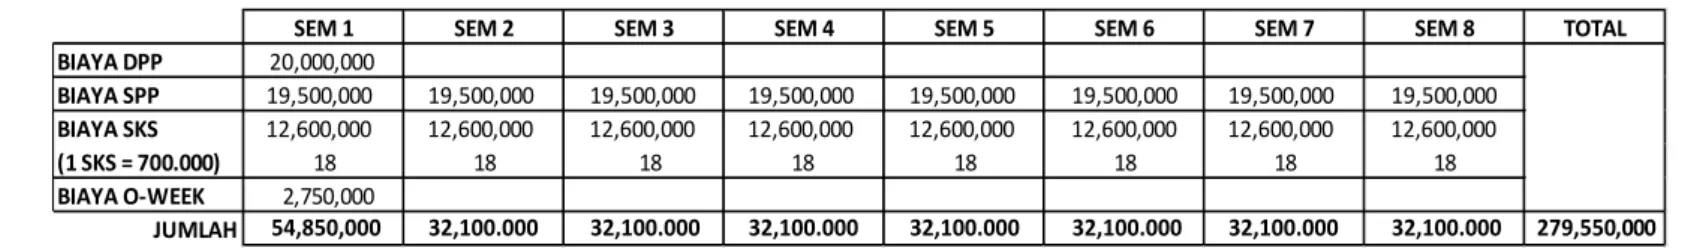 Ilustrasi berdasarkan biaya pelunasan tanggal 20 Januari 2022, dimana calon mahasiswa baru sudah mendapat potongan biaya DPP